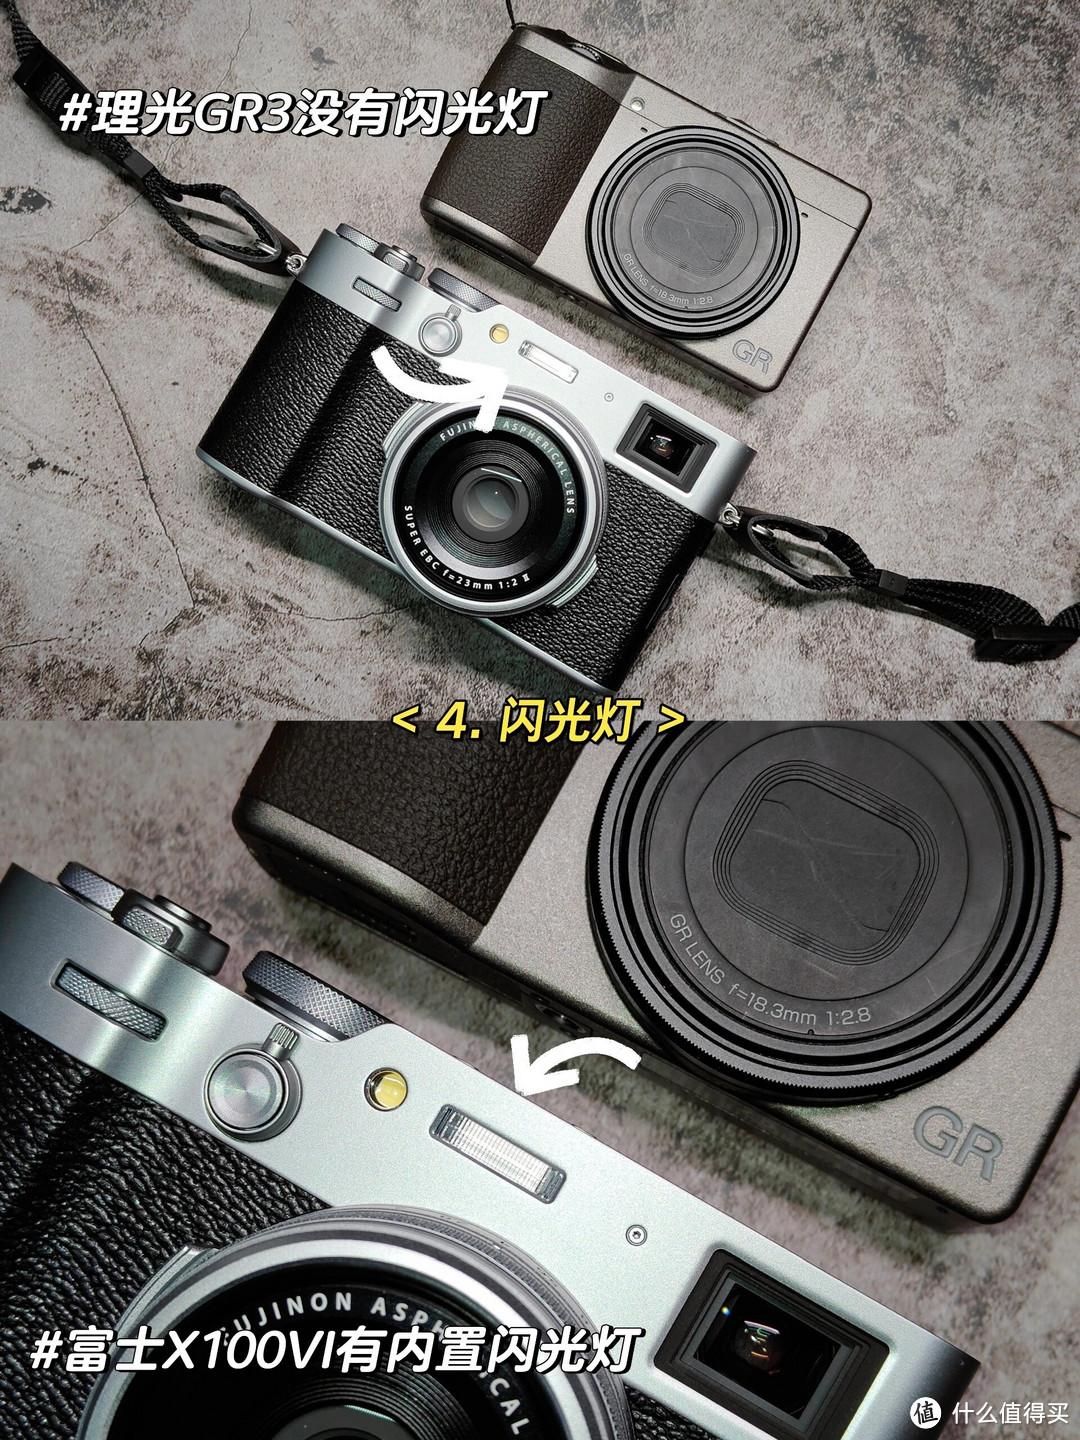 富士X100VI和理光GR3/X是两款备受瞩目的相机